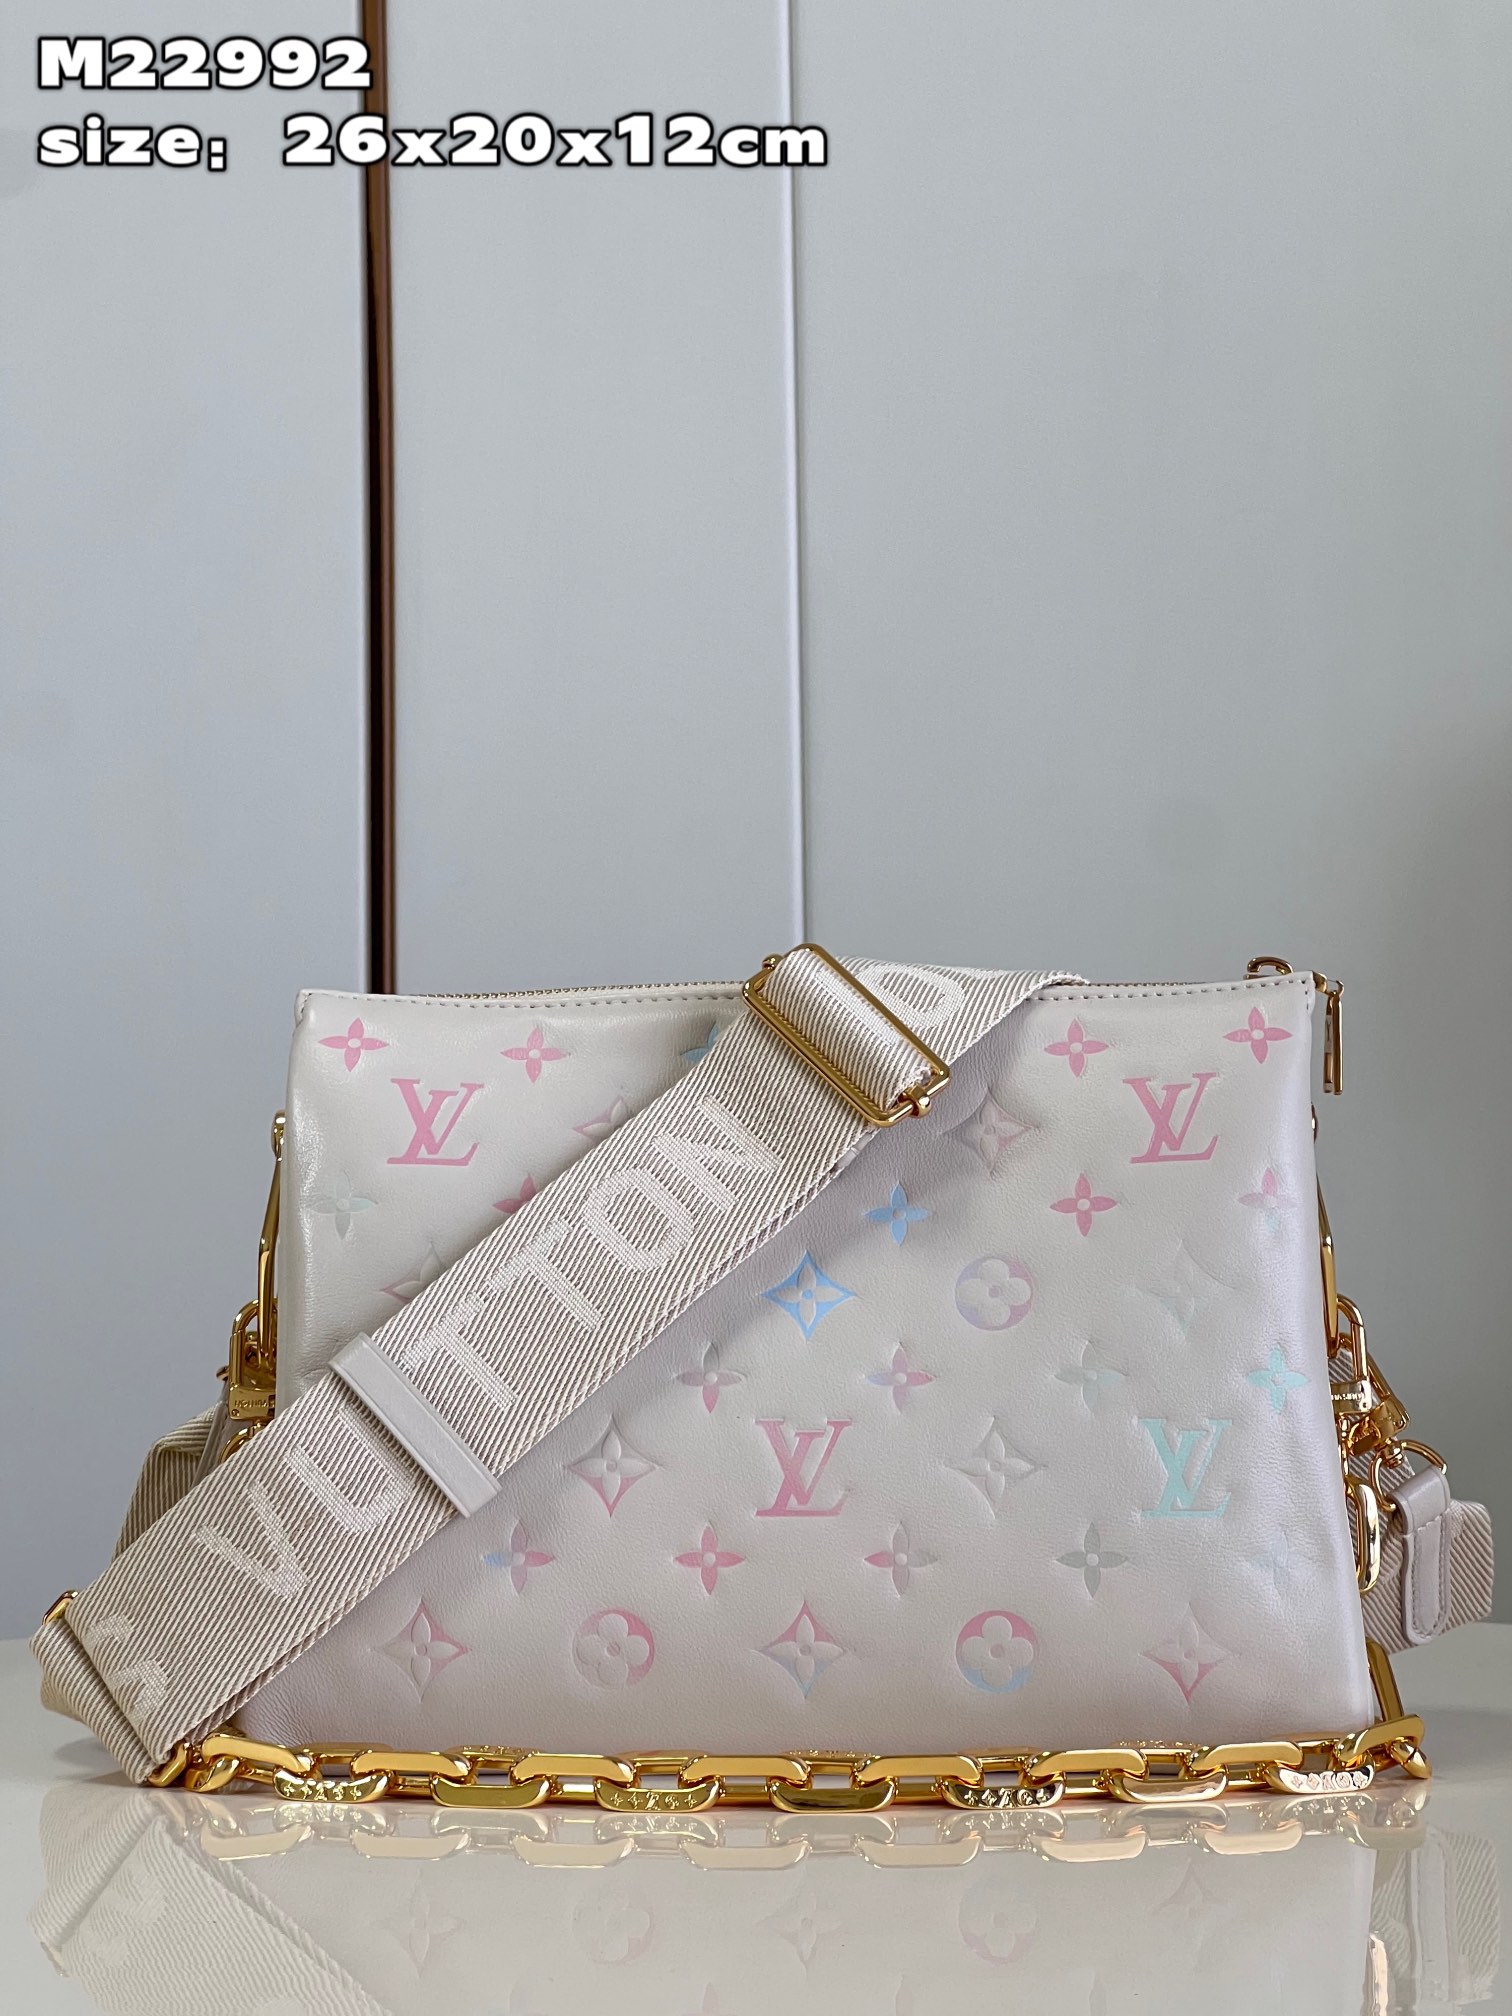 Louis Vuitton LV Coussin Bags Handbags Sheepskin Chains M22992